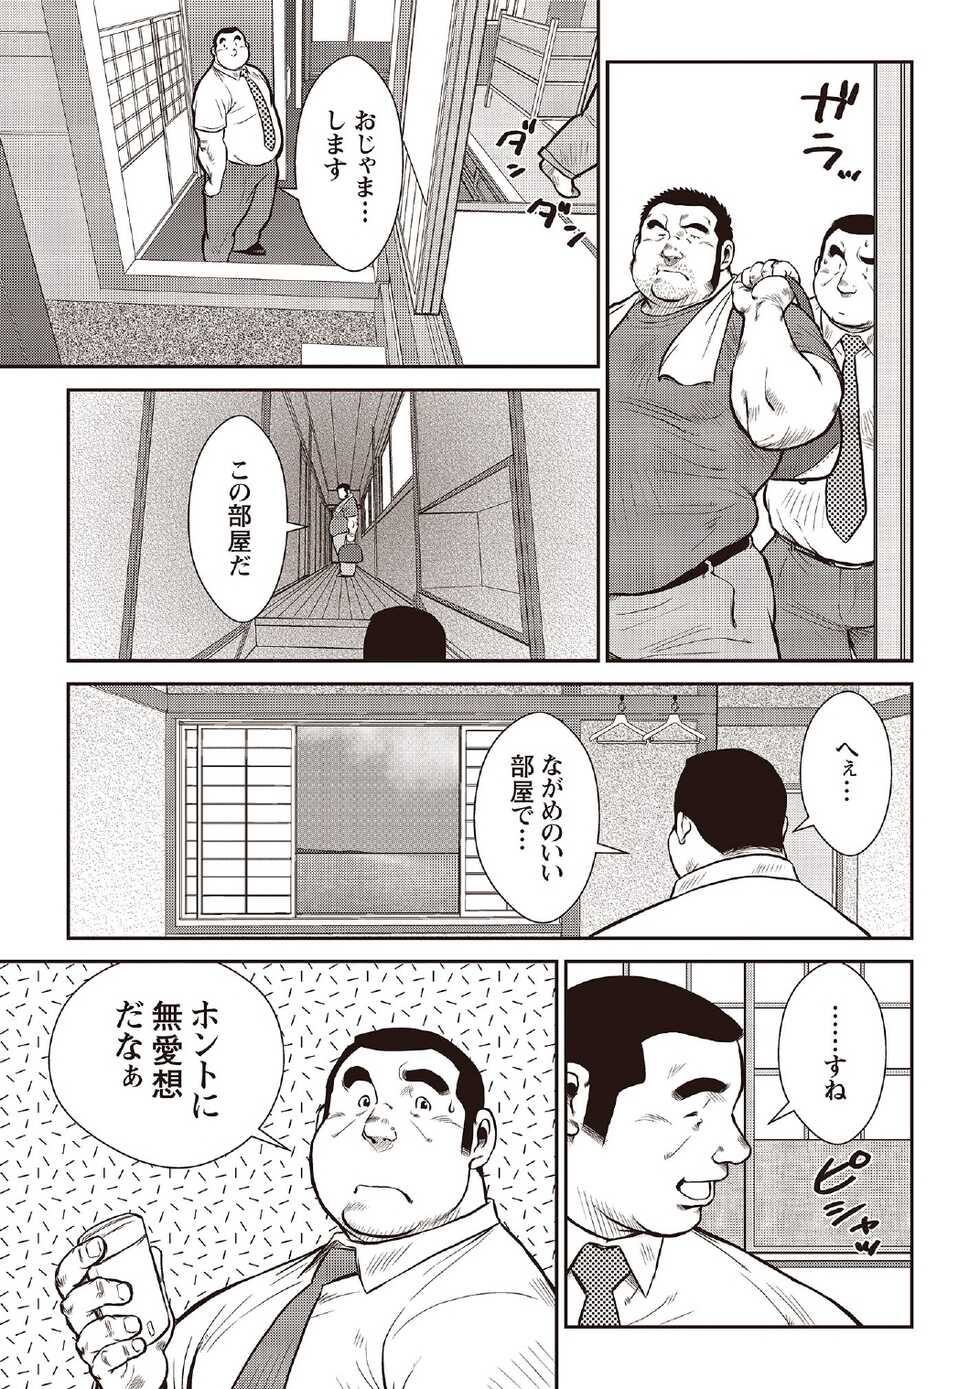 [Ebisubashi Seizou] Ebisubashi Seizou Tanpen Manga Shuu 2 Fuuun! Danshi Ryou [Bunsatsuban] PART 2 Bousou Hantou Taifuu Zensen Ch. 1 + Ch. 2 [Digital] - Page 9